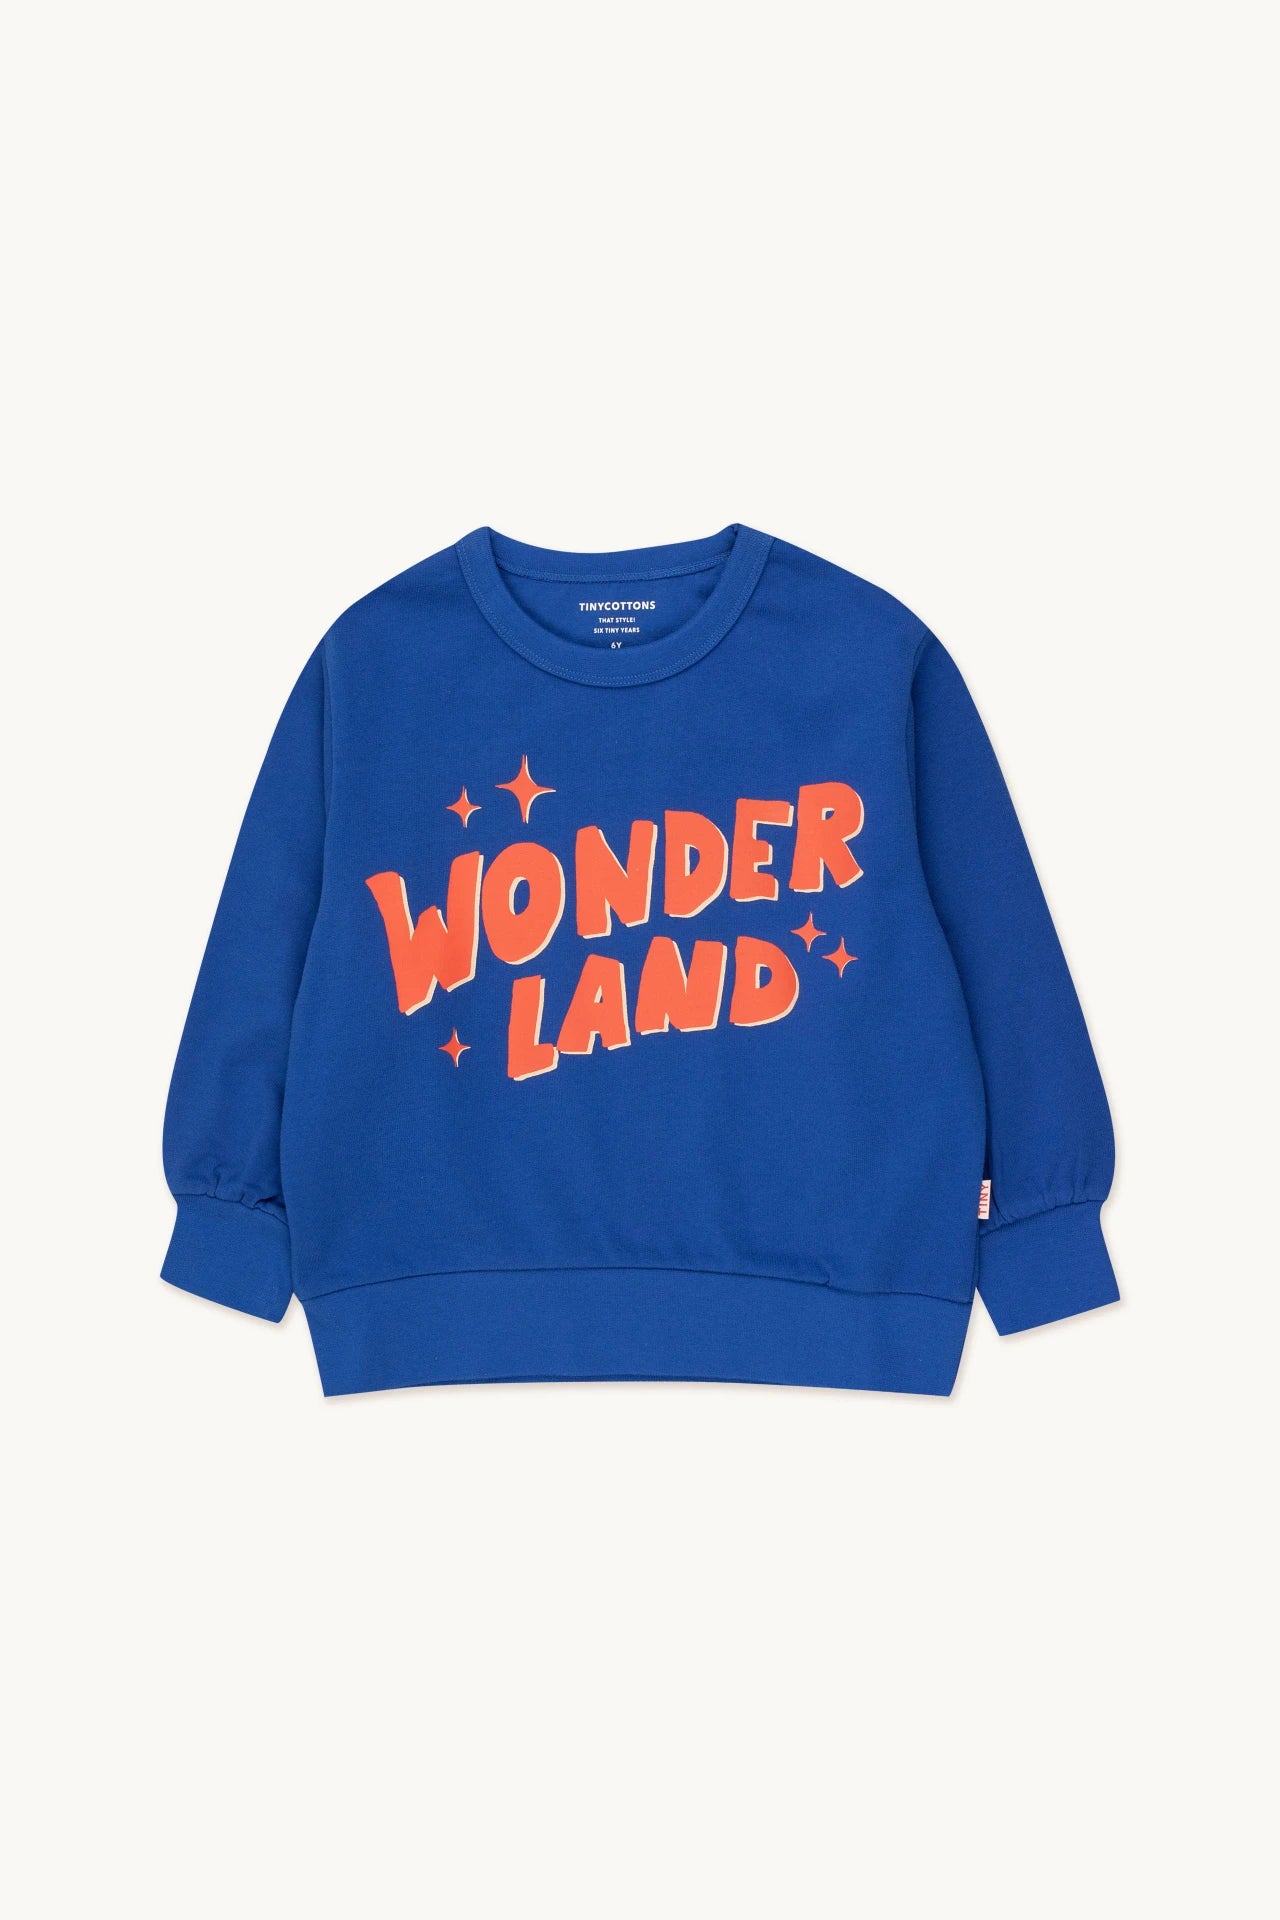 Tiny Cottons - Wonderland Sweatshirt 